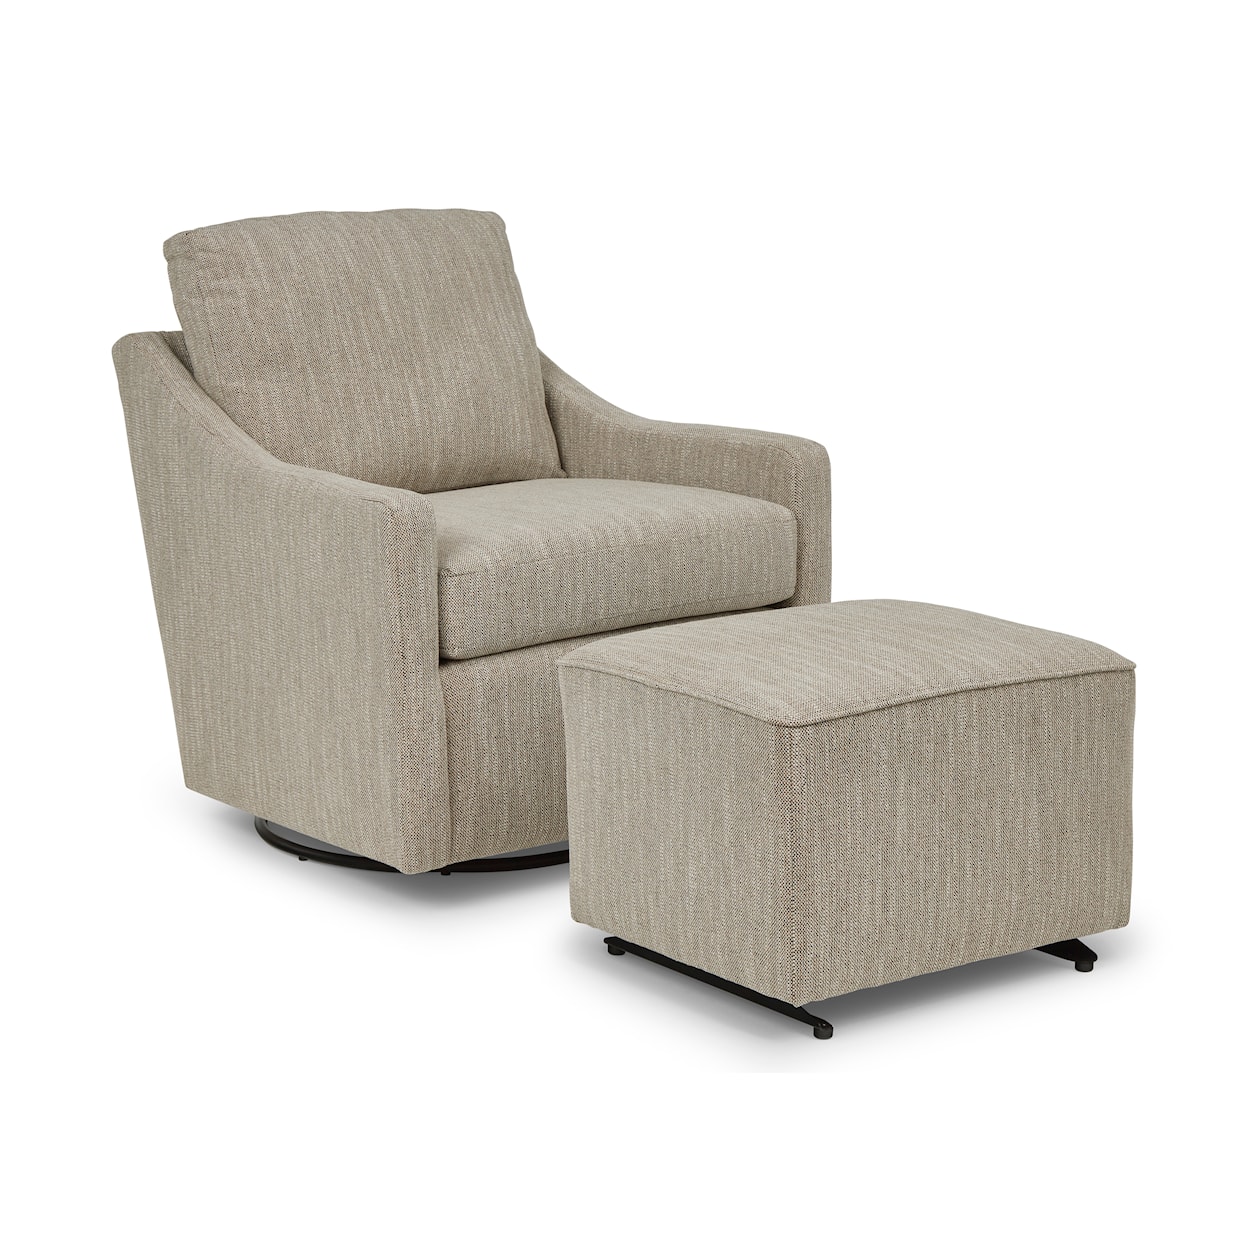 Bravo Furniture Hallond Swivel Glider Chair